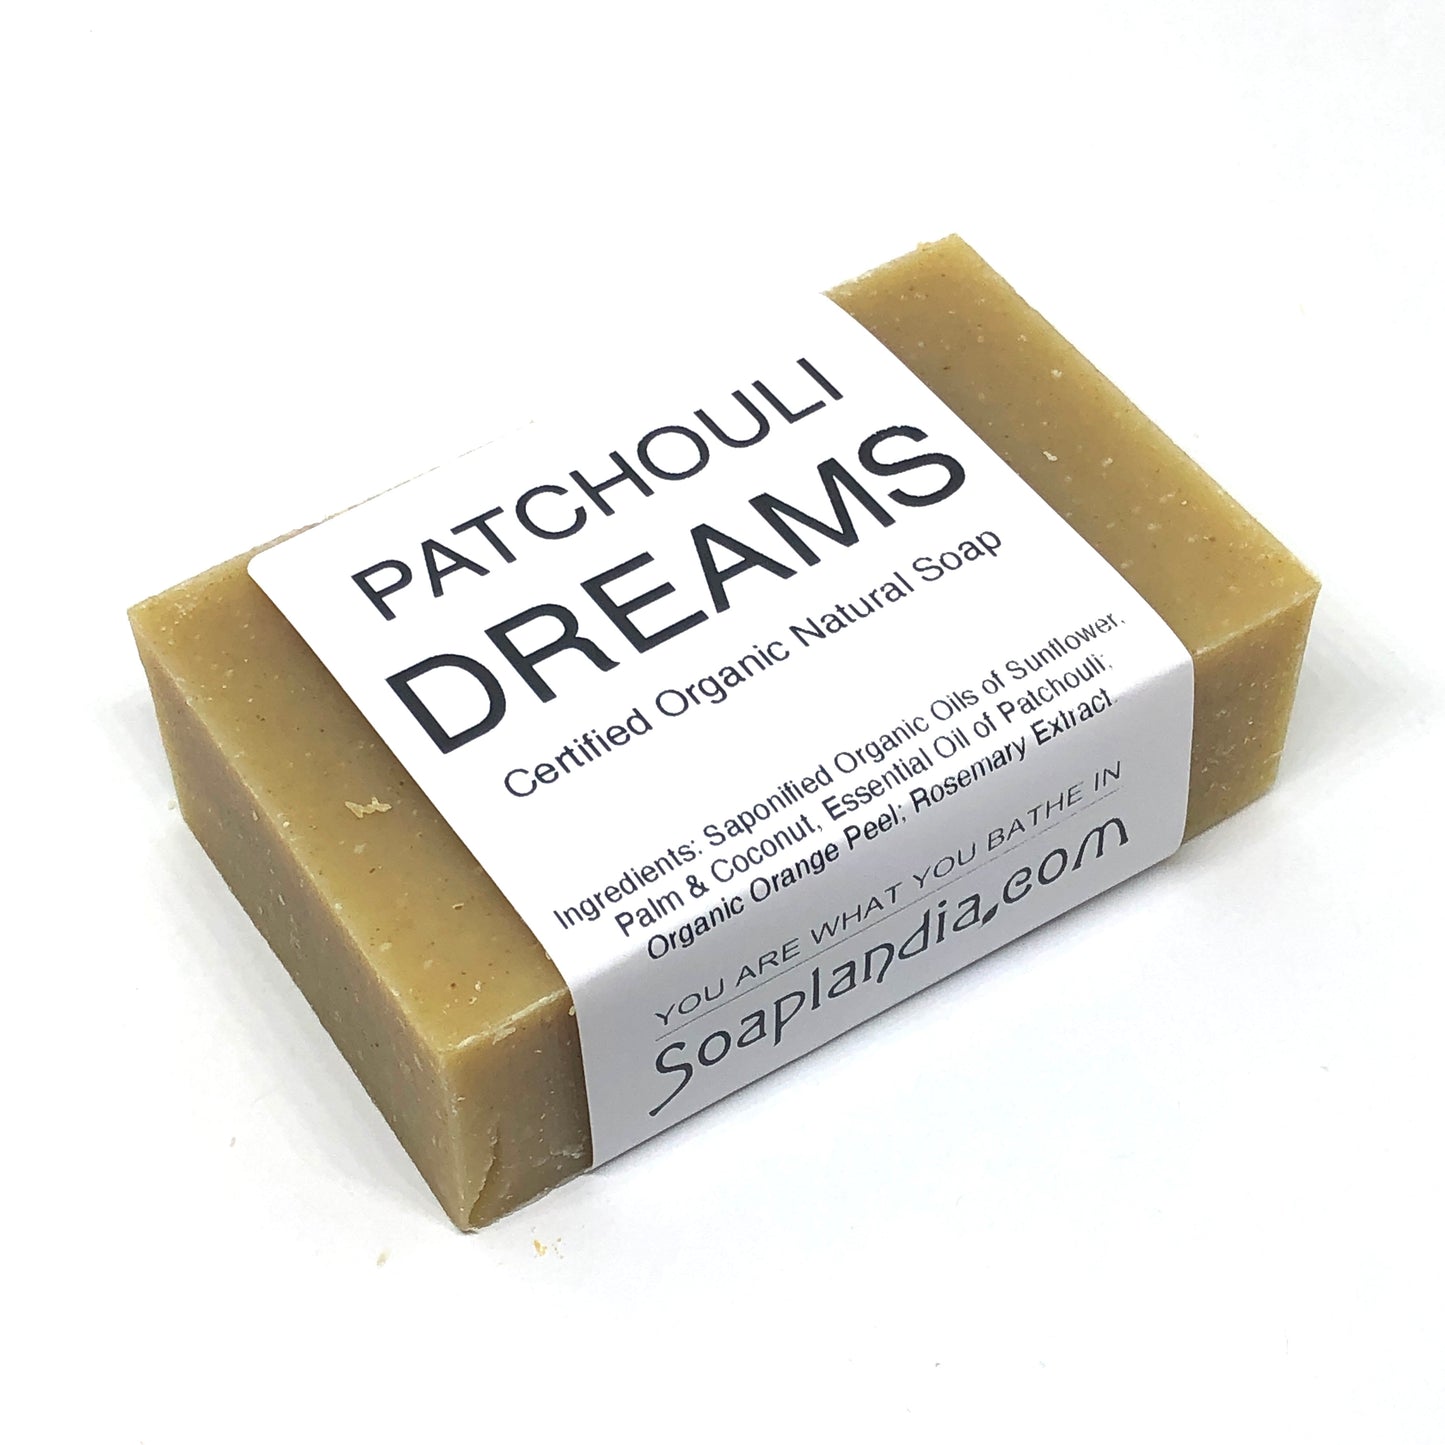 Patchouli Dreams Bar Soap, Organic